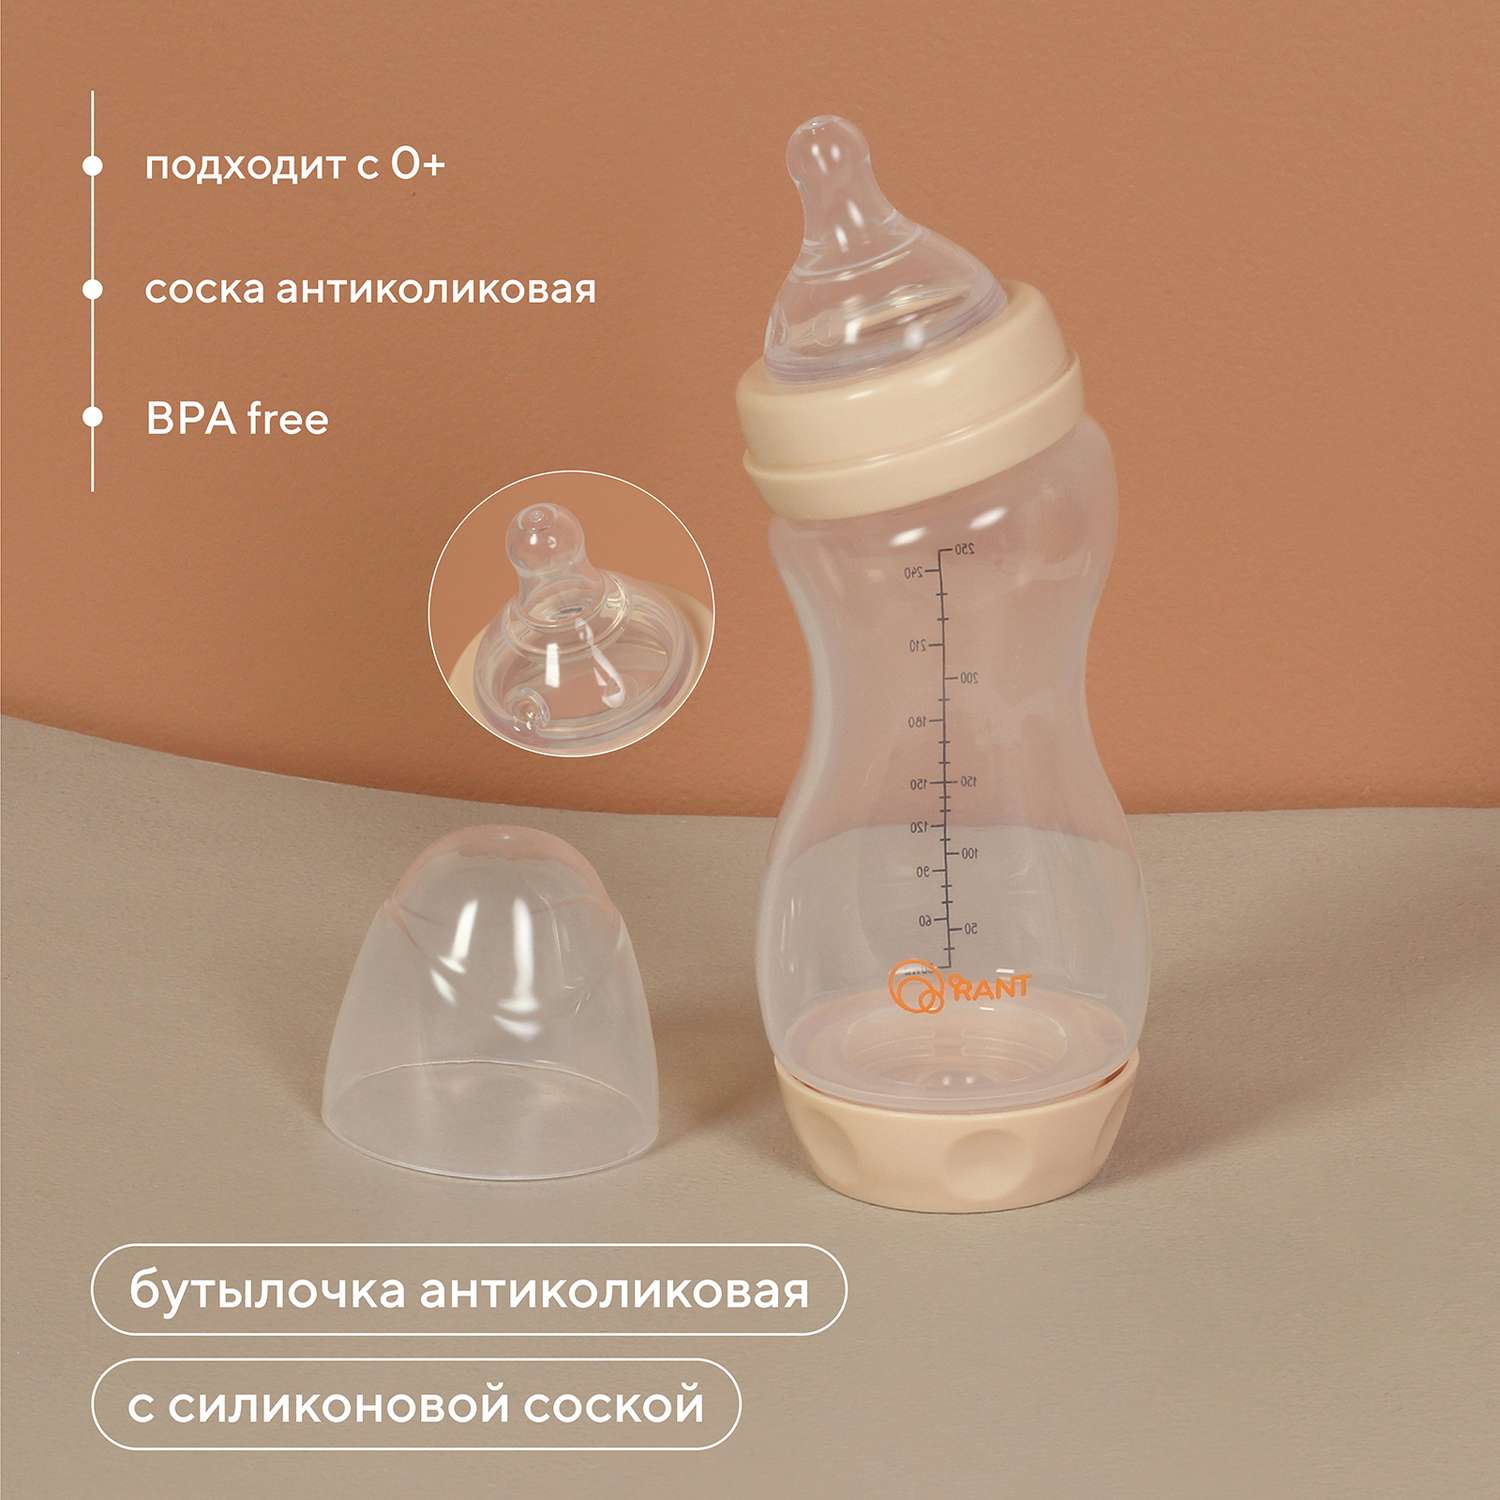 Бутылочка Rant антиколиковая с силиконовой соской 250 мл. 0+ арт. 1005 beige - фото 2